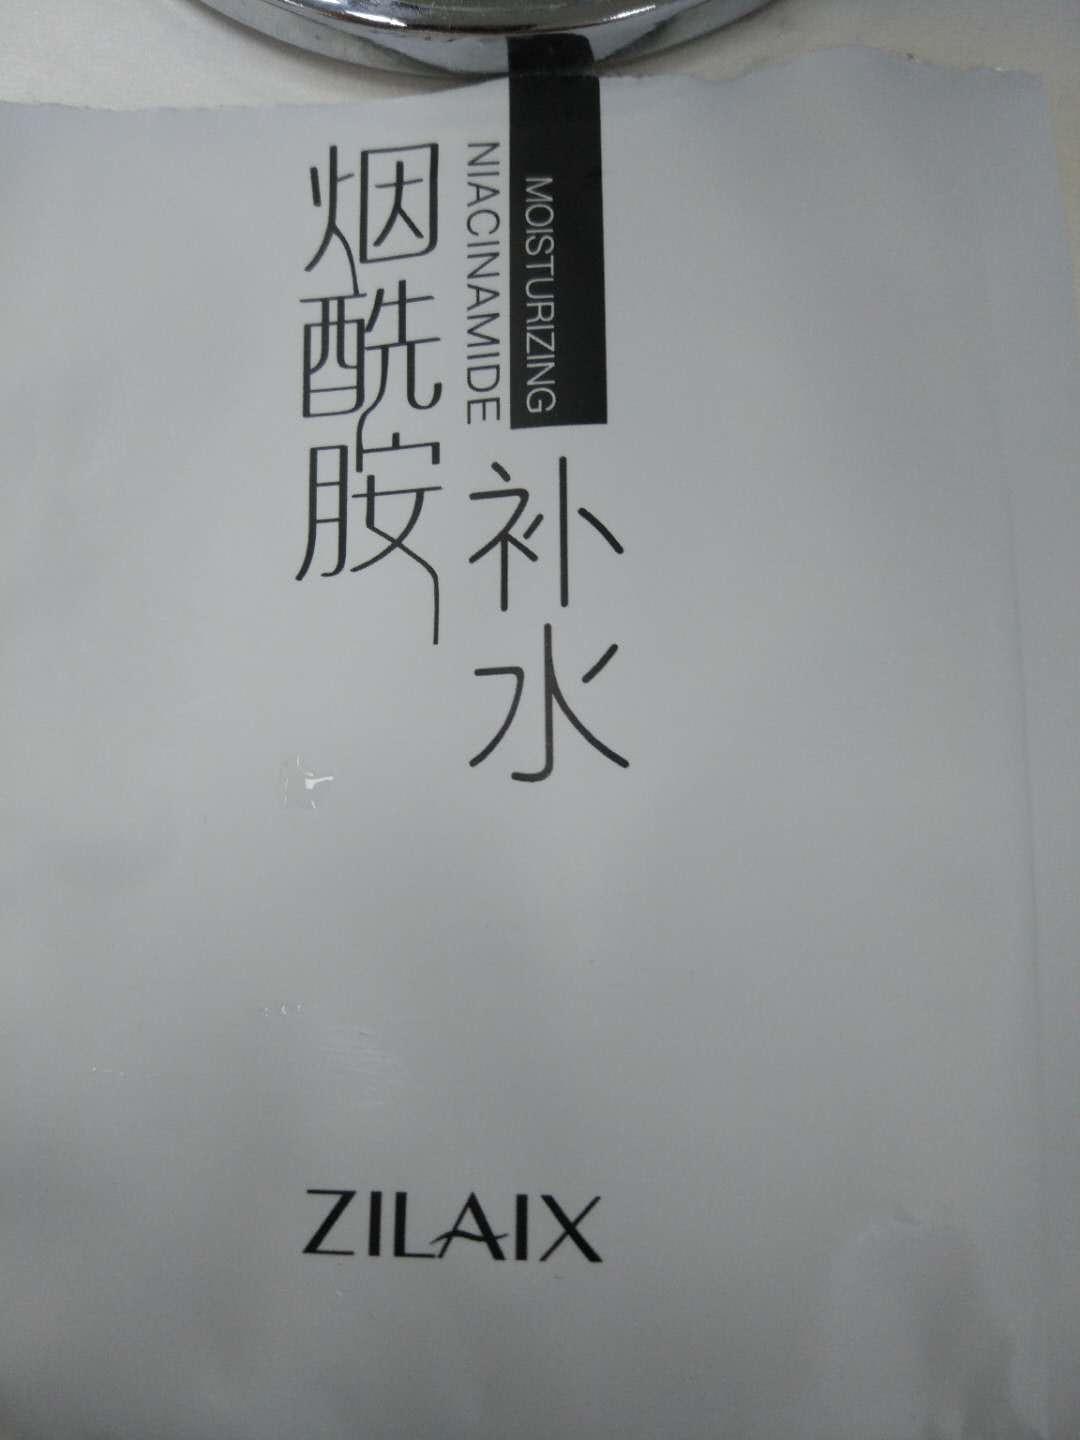 资莱皙logo图片